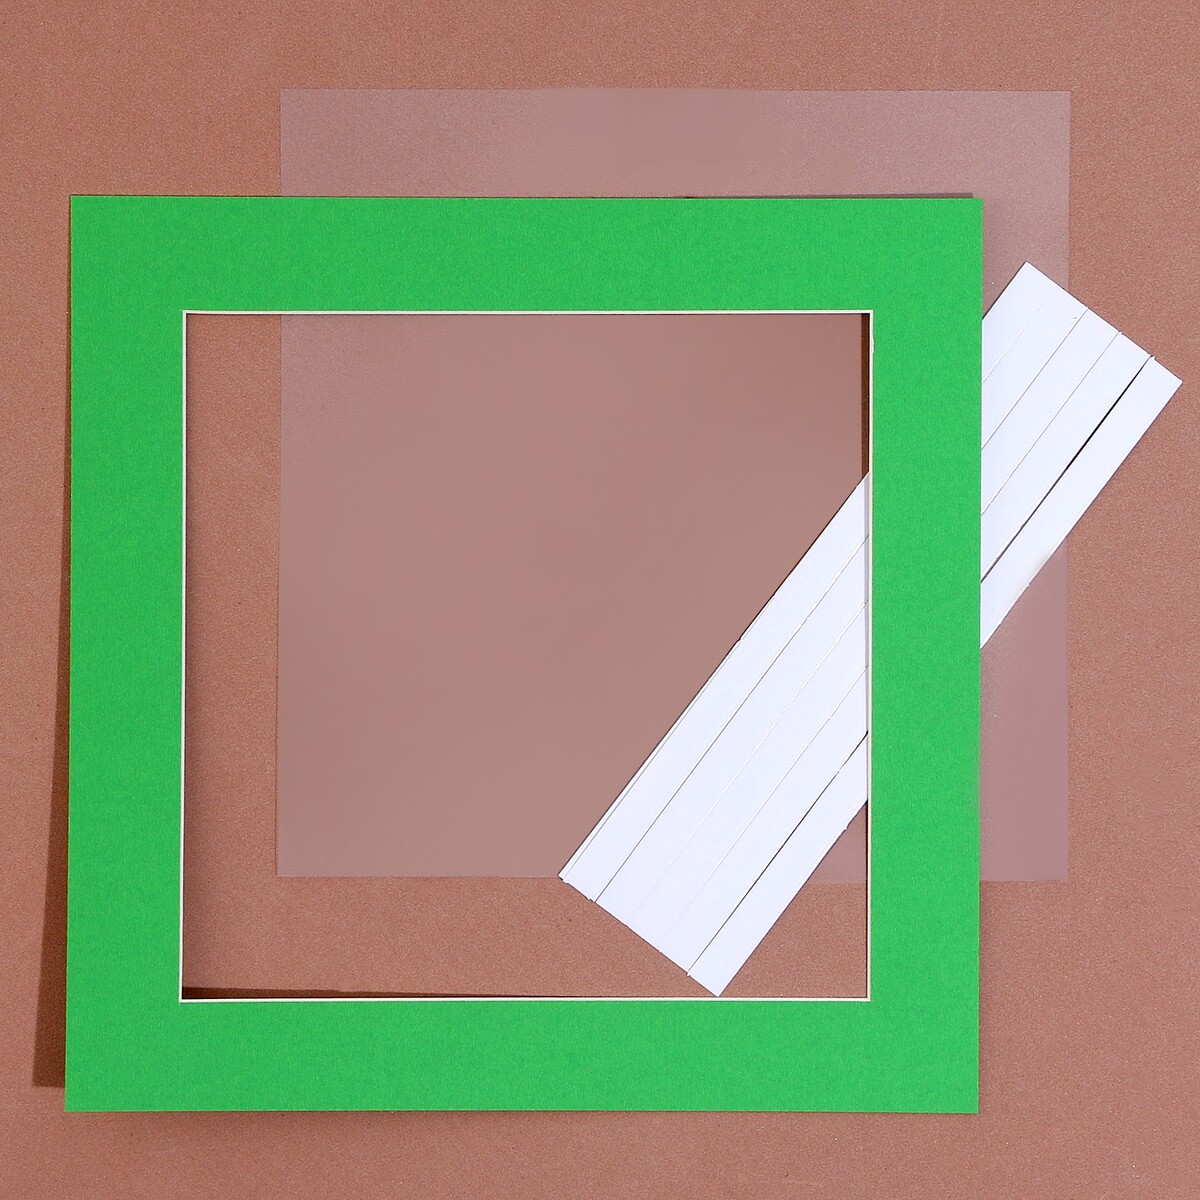 Паспарту размер рамки 24 × 24 см, прозрачный лист, клейкая лента, цвет зеленый паспарту размер рамки 21 5 × 16 5 см прозрачный лист клейкая лента зеленый